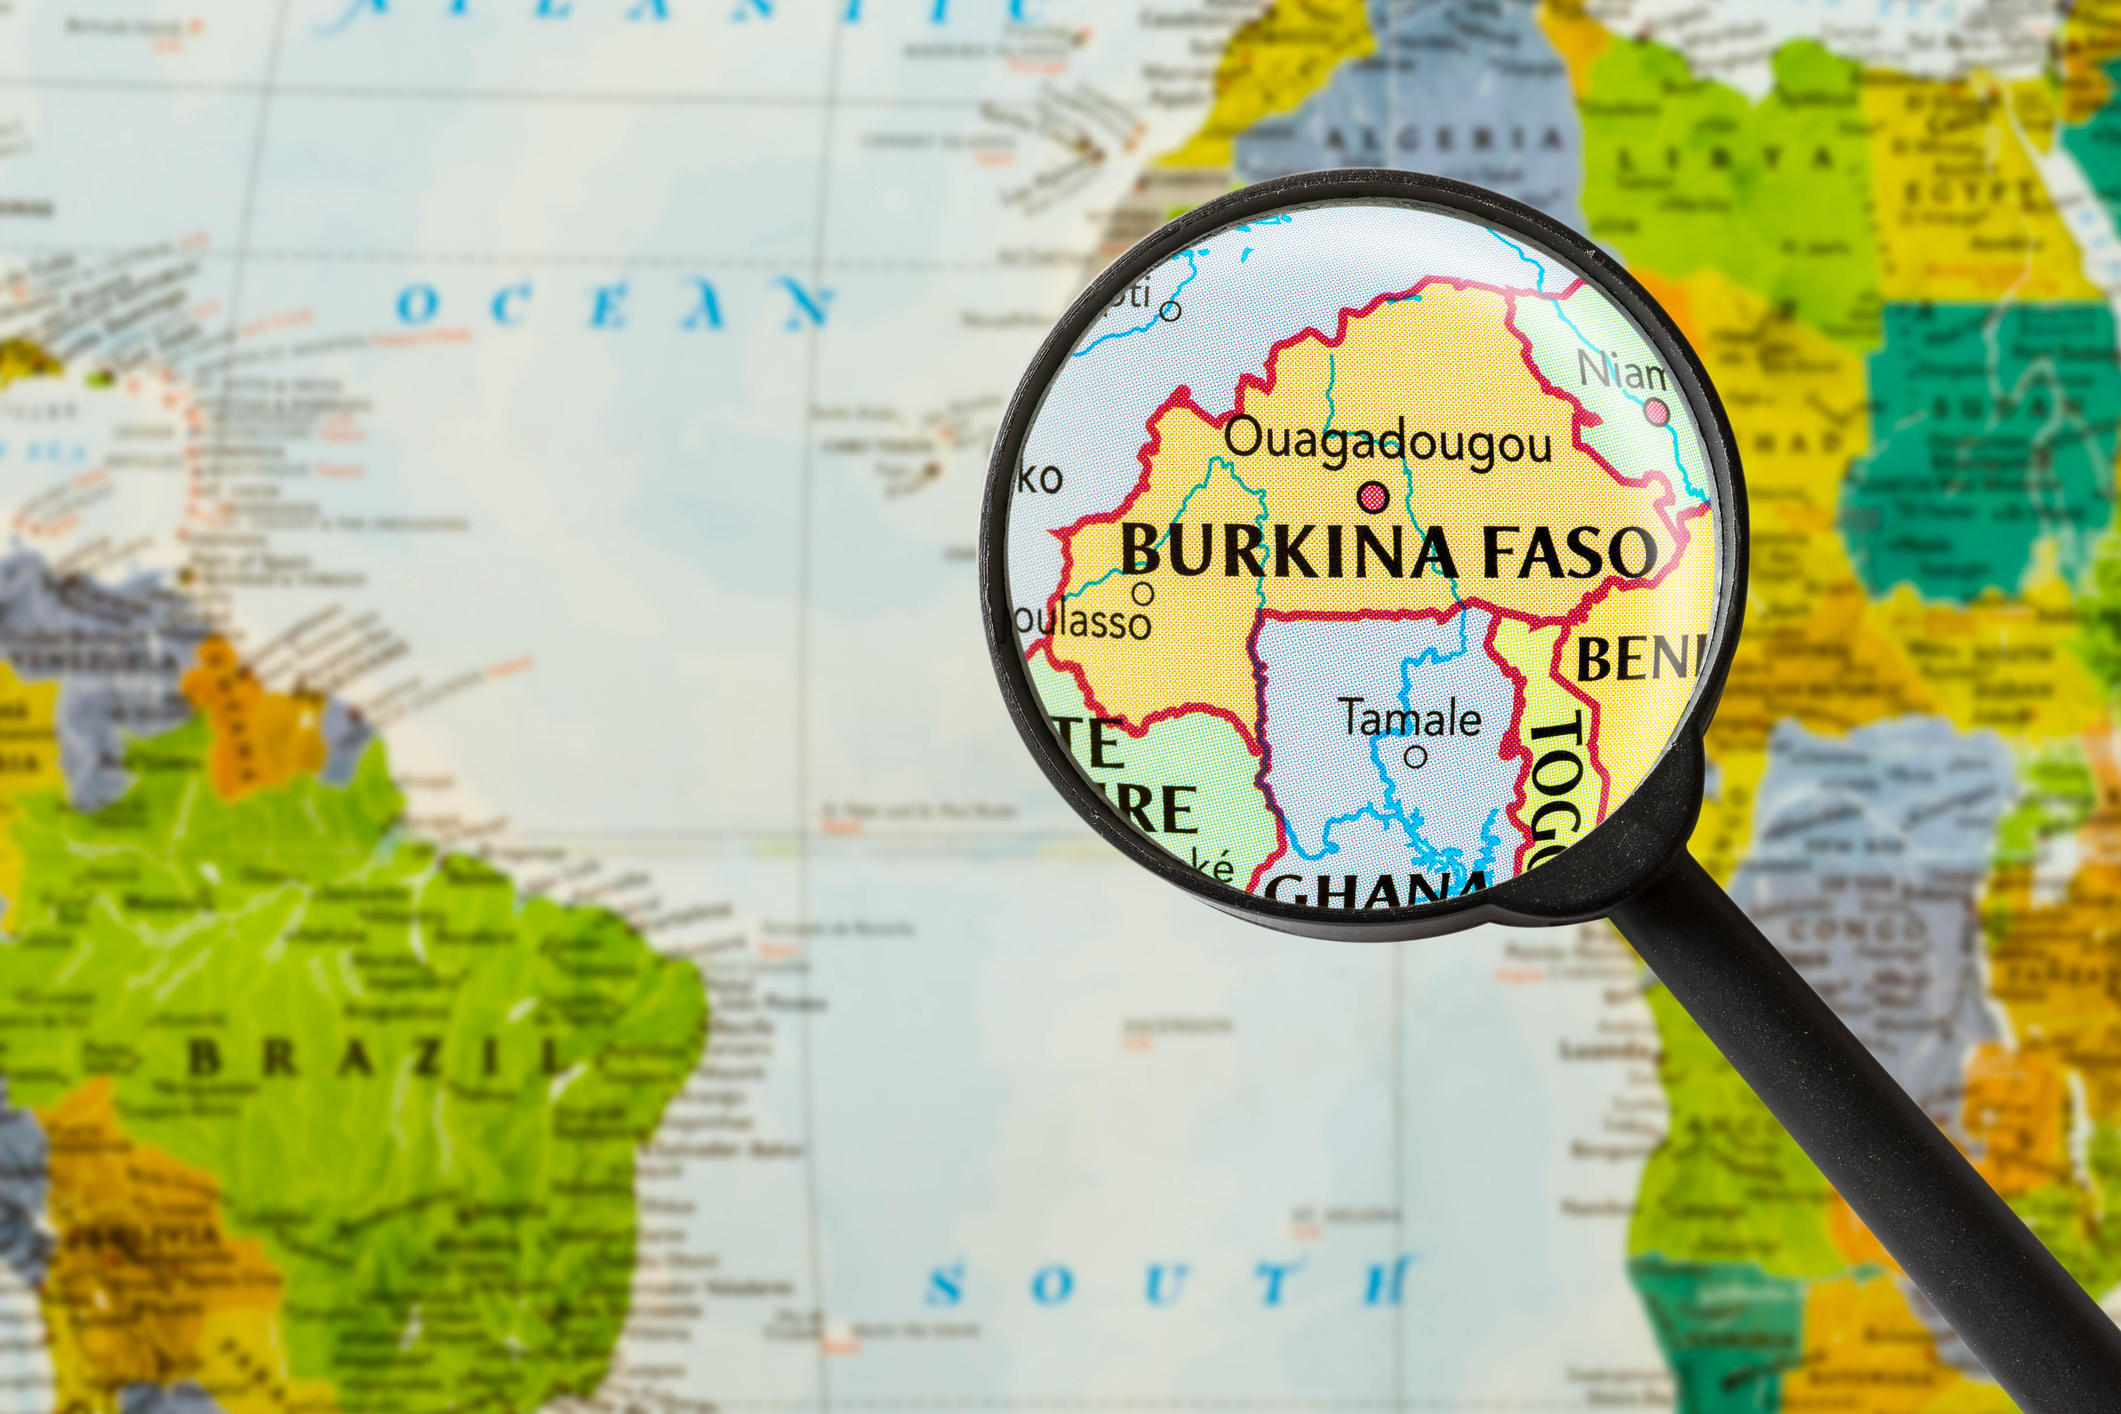 Burkina Faso : deux jihadistes présumés mis en examen à la suite de l’attaque de Solhan